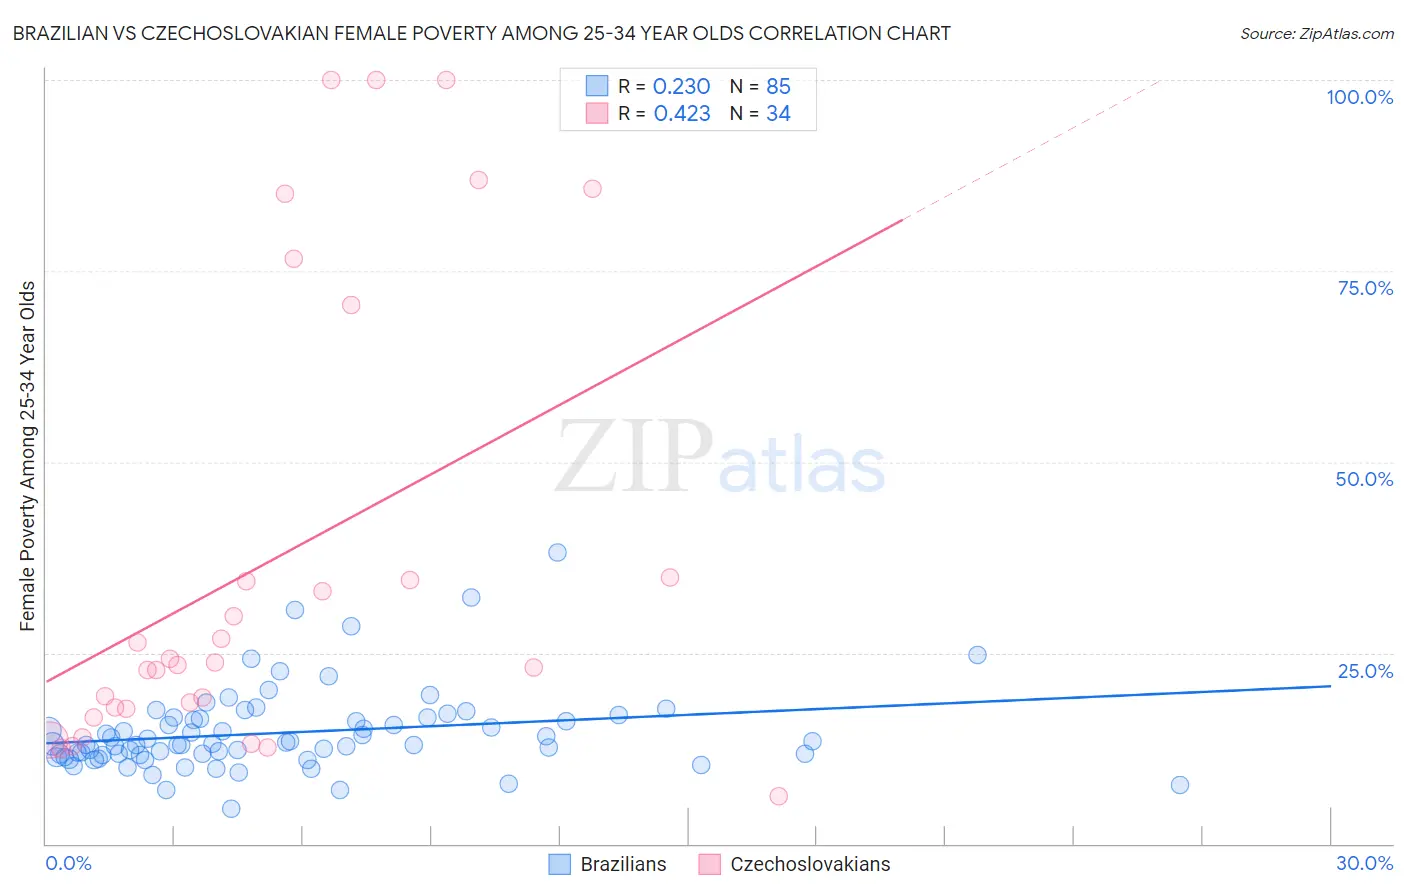 Brazilian vs Czechoslovakian Female Poverty Among 25-34 Year Olds